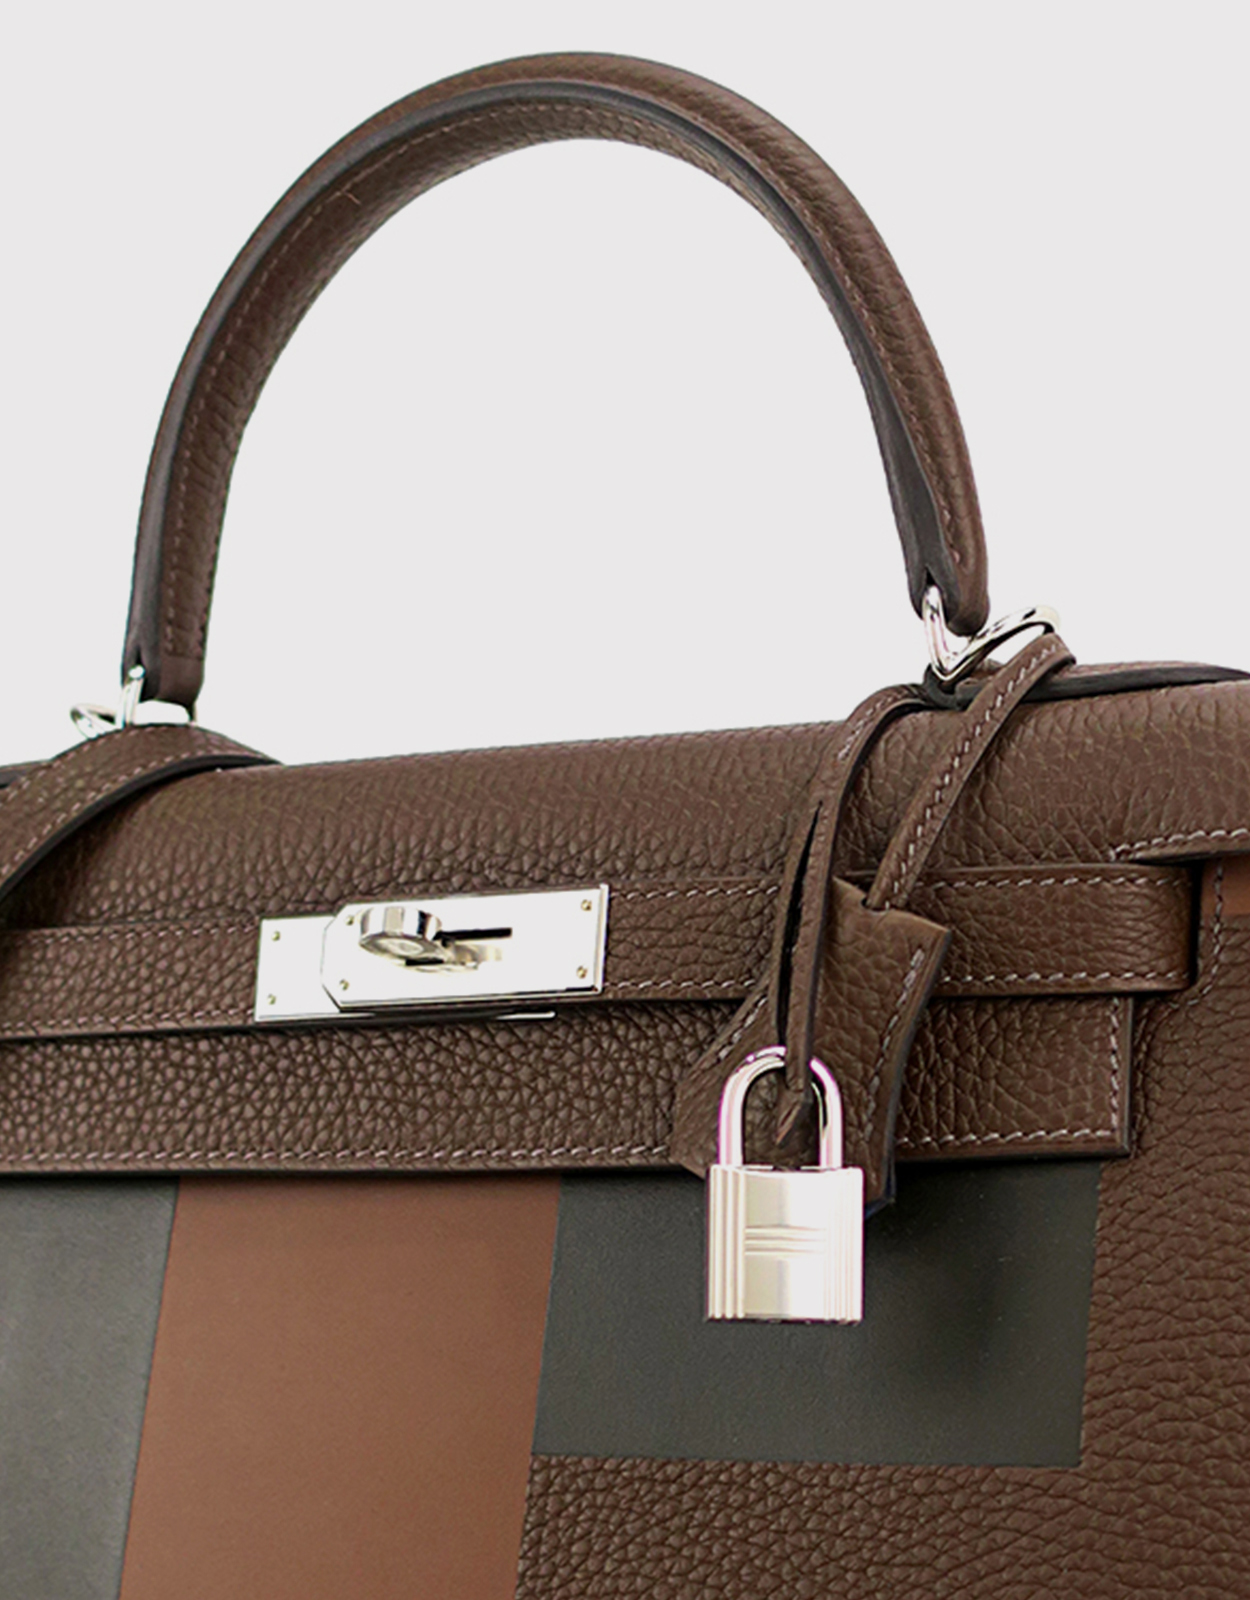 Hermès Hermès Kelly 28 Togo and Epsom Leather Handbag-Letter E Silver  Hardward (Top Handle)